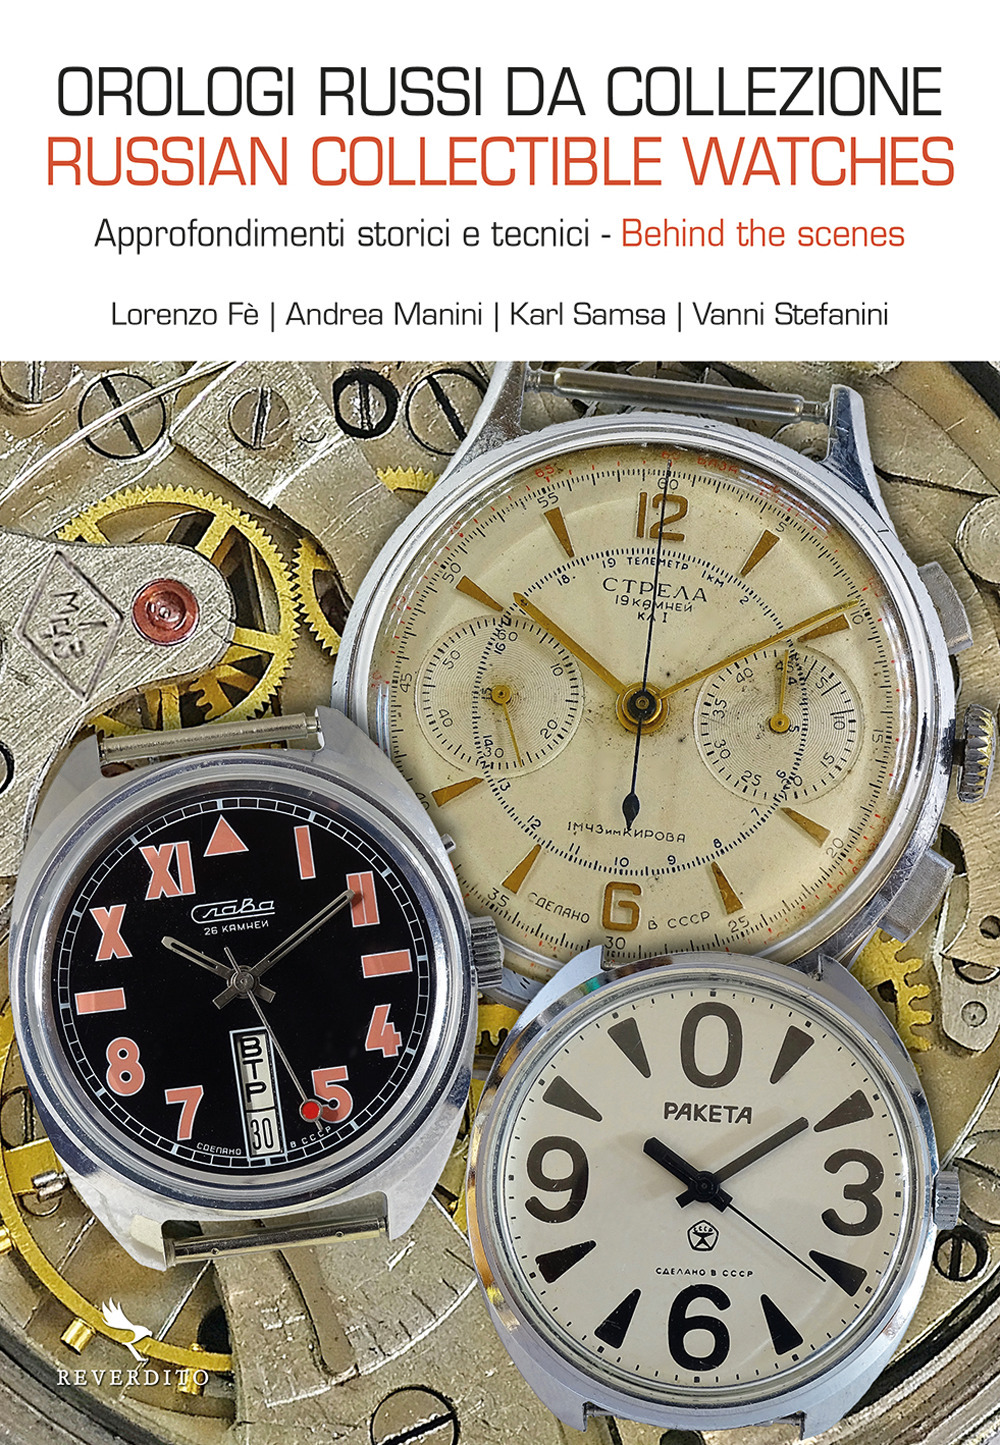 Orologi russi da collezione. Approfondimenti storici e tecnici-Russian collectible watches. Behind the scenes. Ediz. illustrata